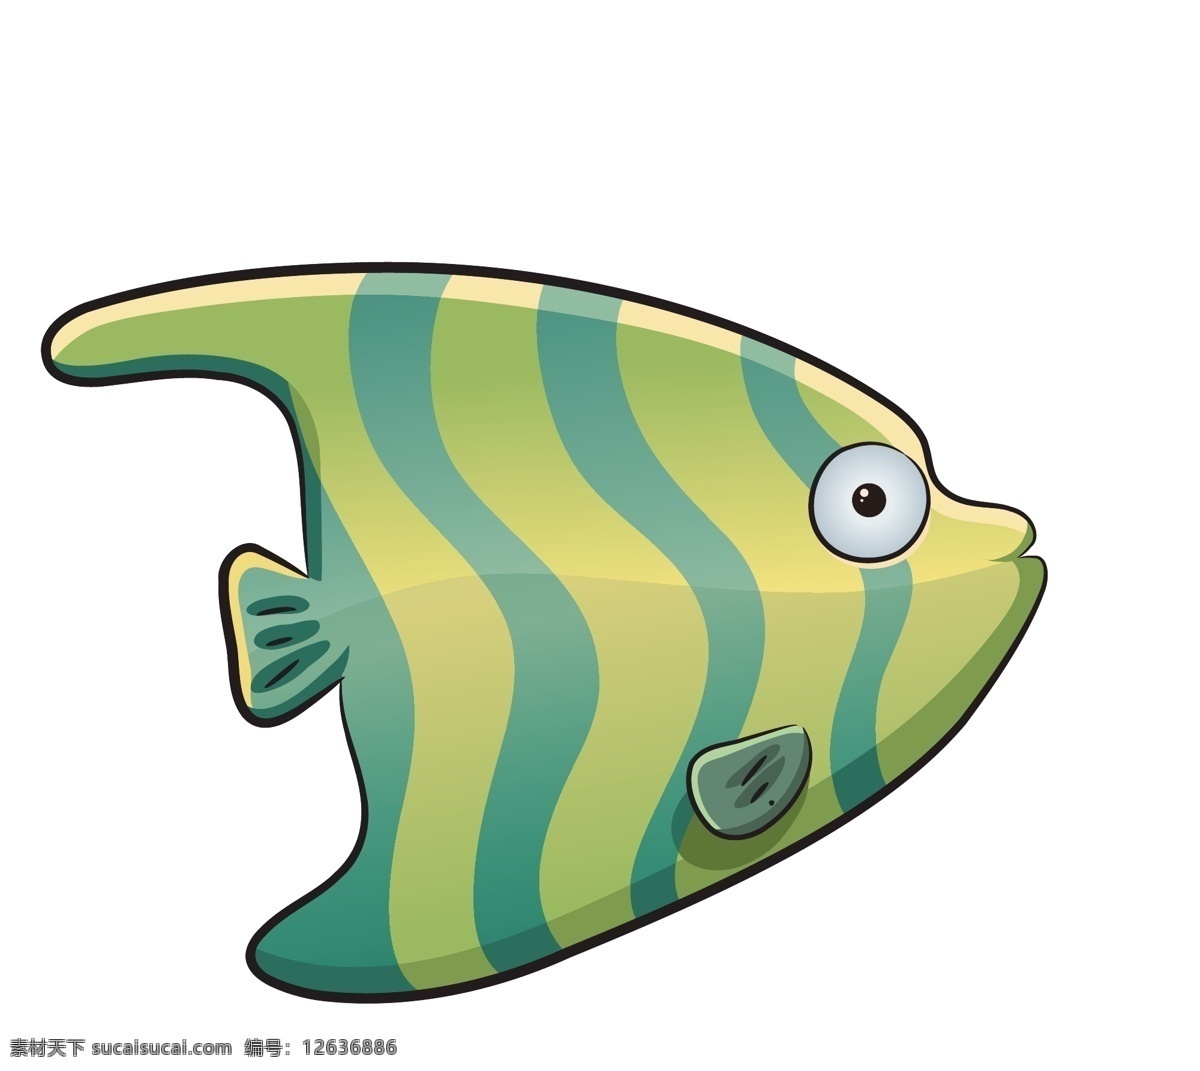 卡通 海底 小鱼 海洋生物 模板下载 海洋 鱼 矢量生物 海鲜 矢量